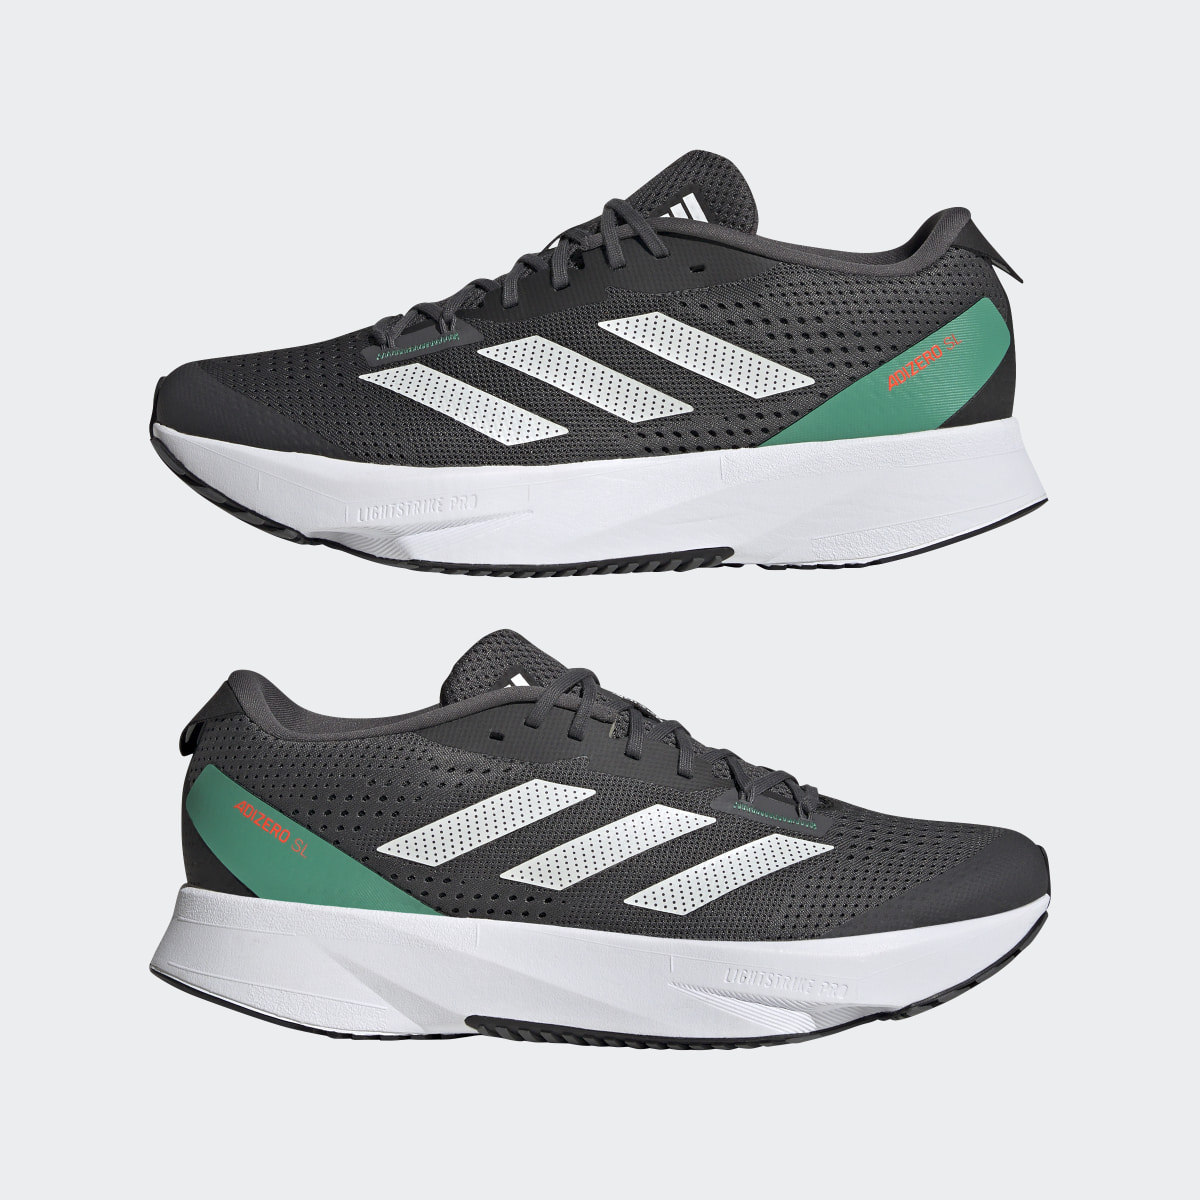 Adidas Adizero SL Running Shoes. 8